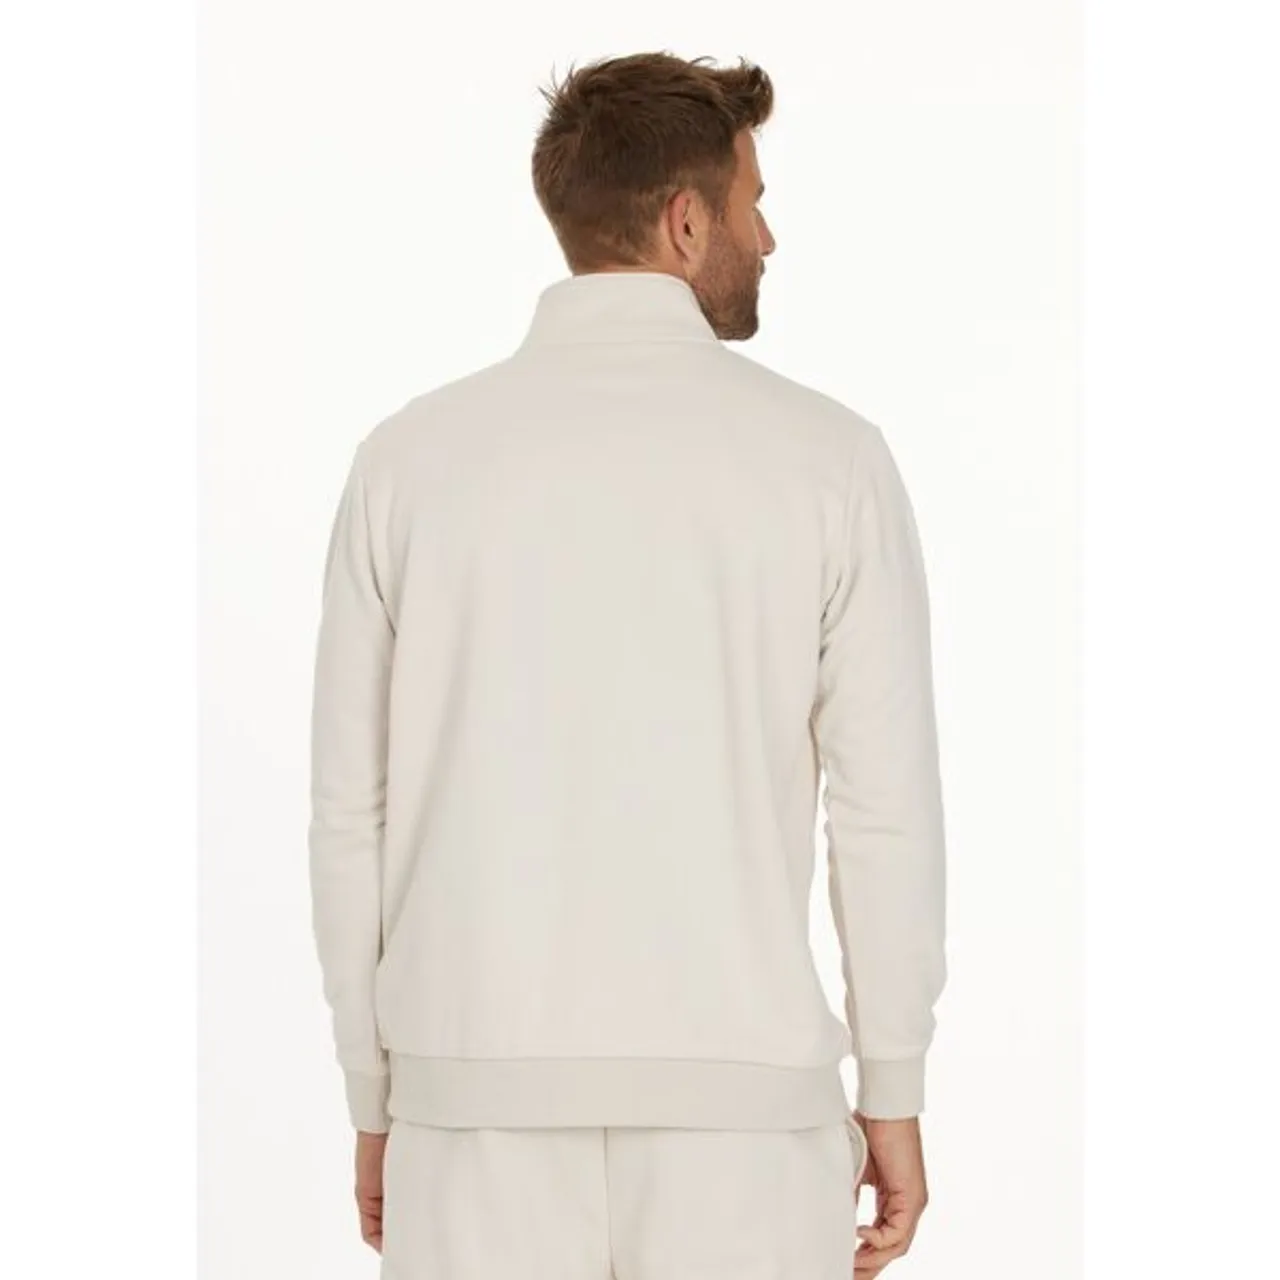 Sweatshirt VIRTUS "Hotown" Gr. XXXL, beige (hellbeige) Herren Sweatshirts mit superweichem Baumwoll-Tragegfühl